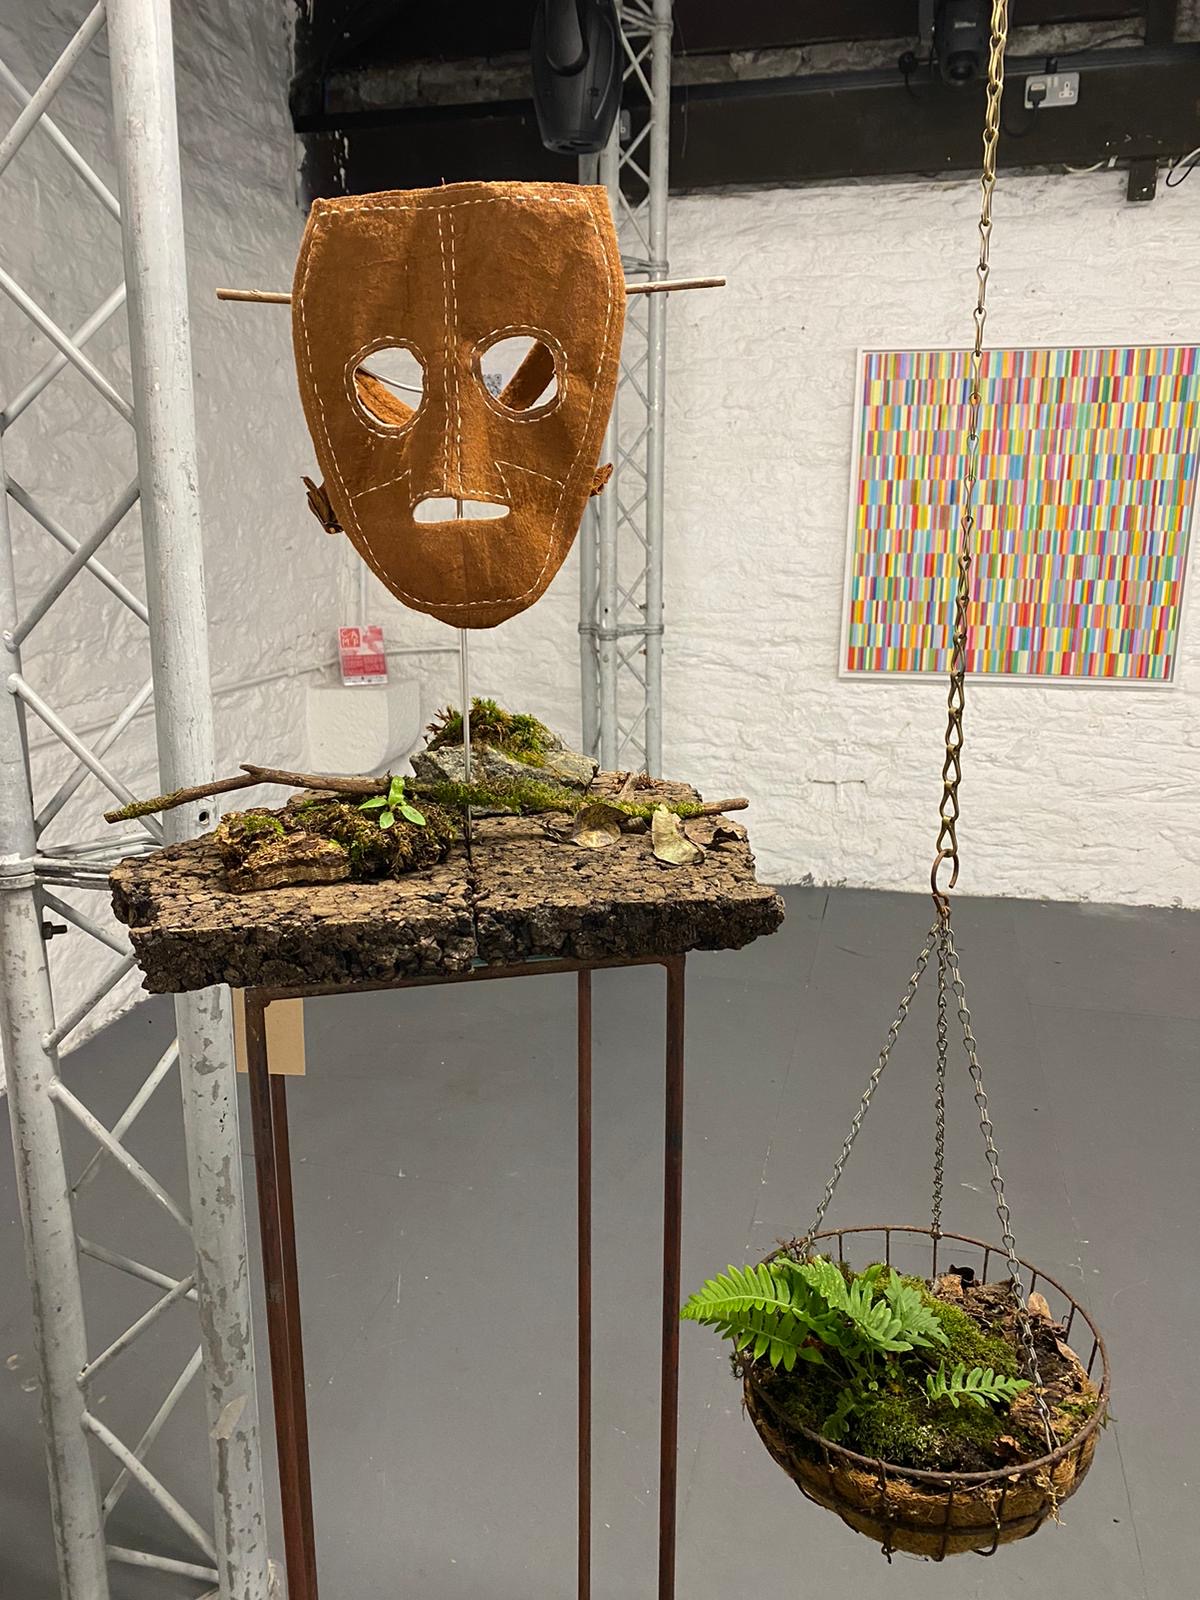 kamikazi mask, hanging basket, moss and ferns